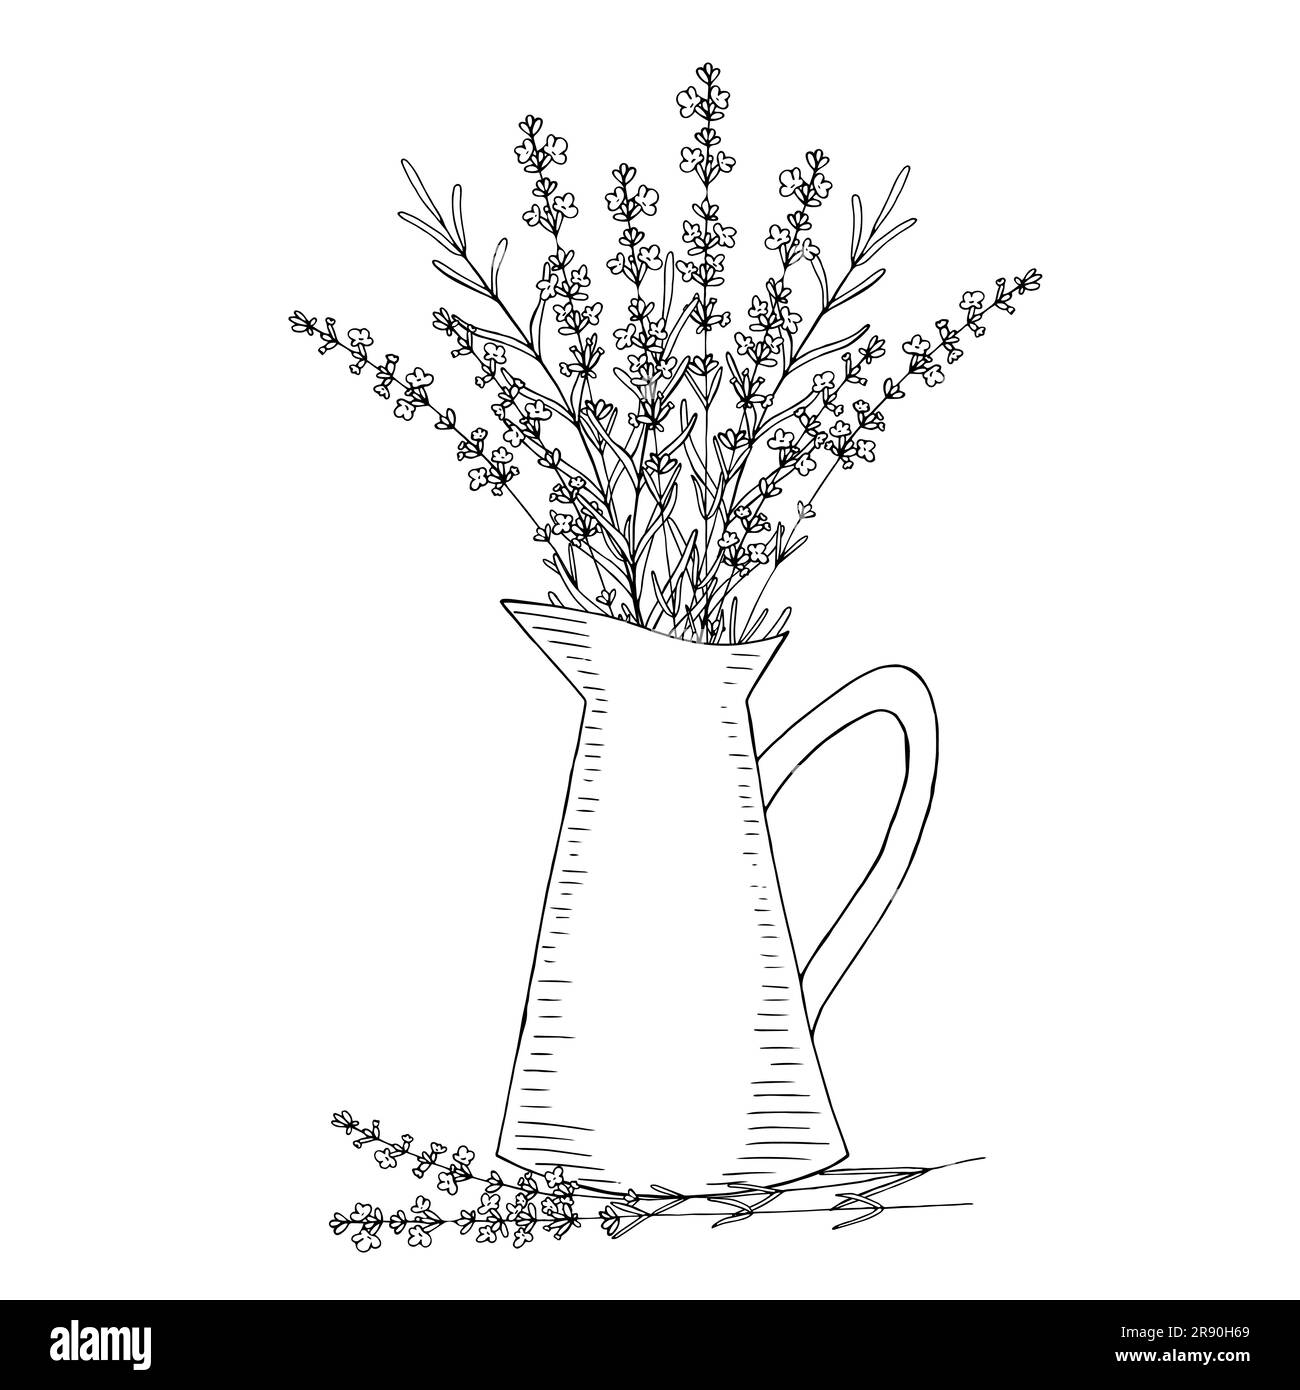 Fiori di lavanda in una brocca, elementi isolati con motivi floreali vettoriali disegnati a mano per un design su sfondo bianco Illustrazione Vettoriale